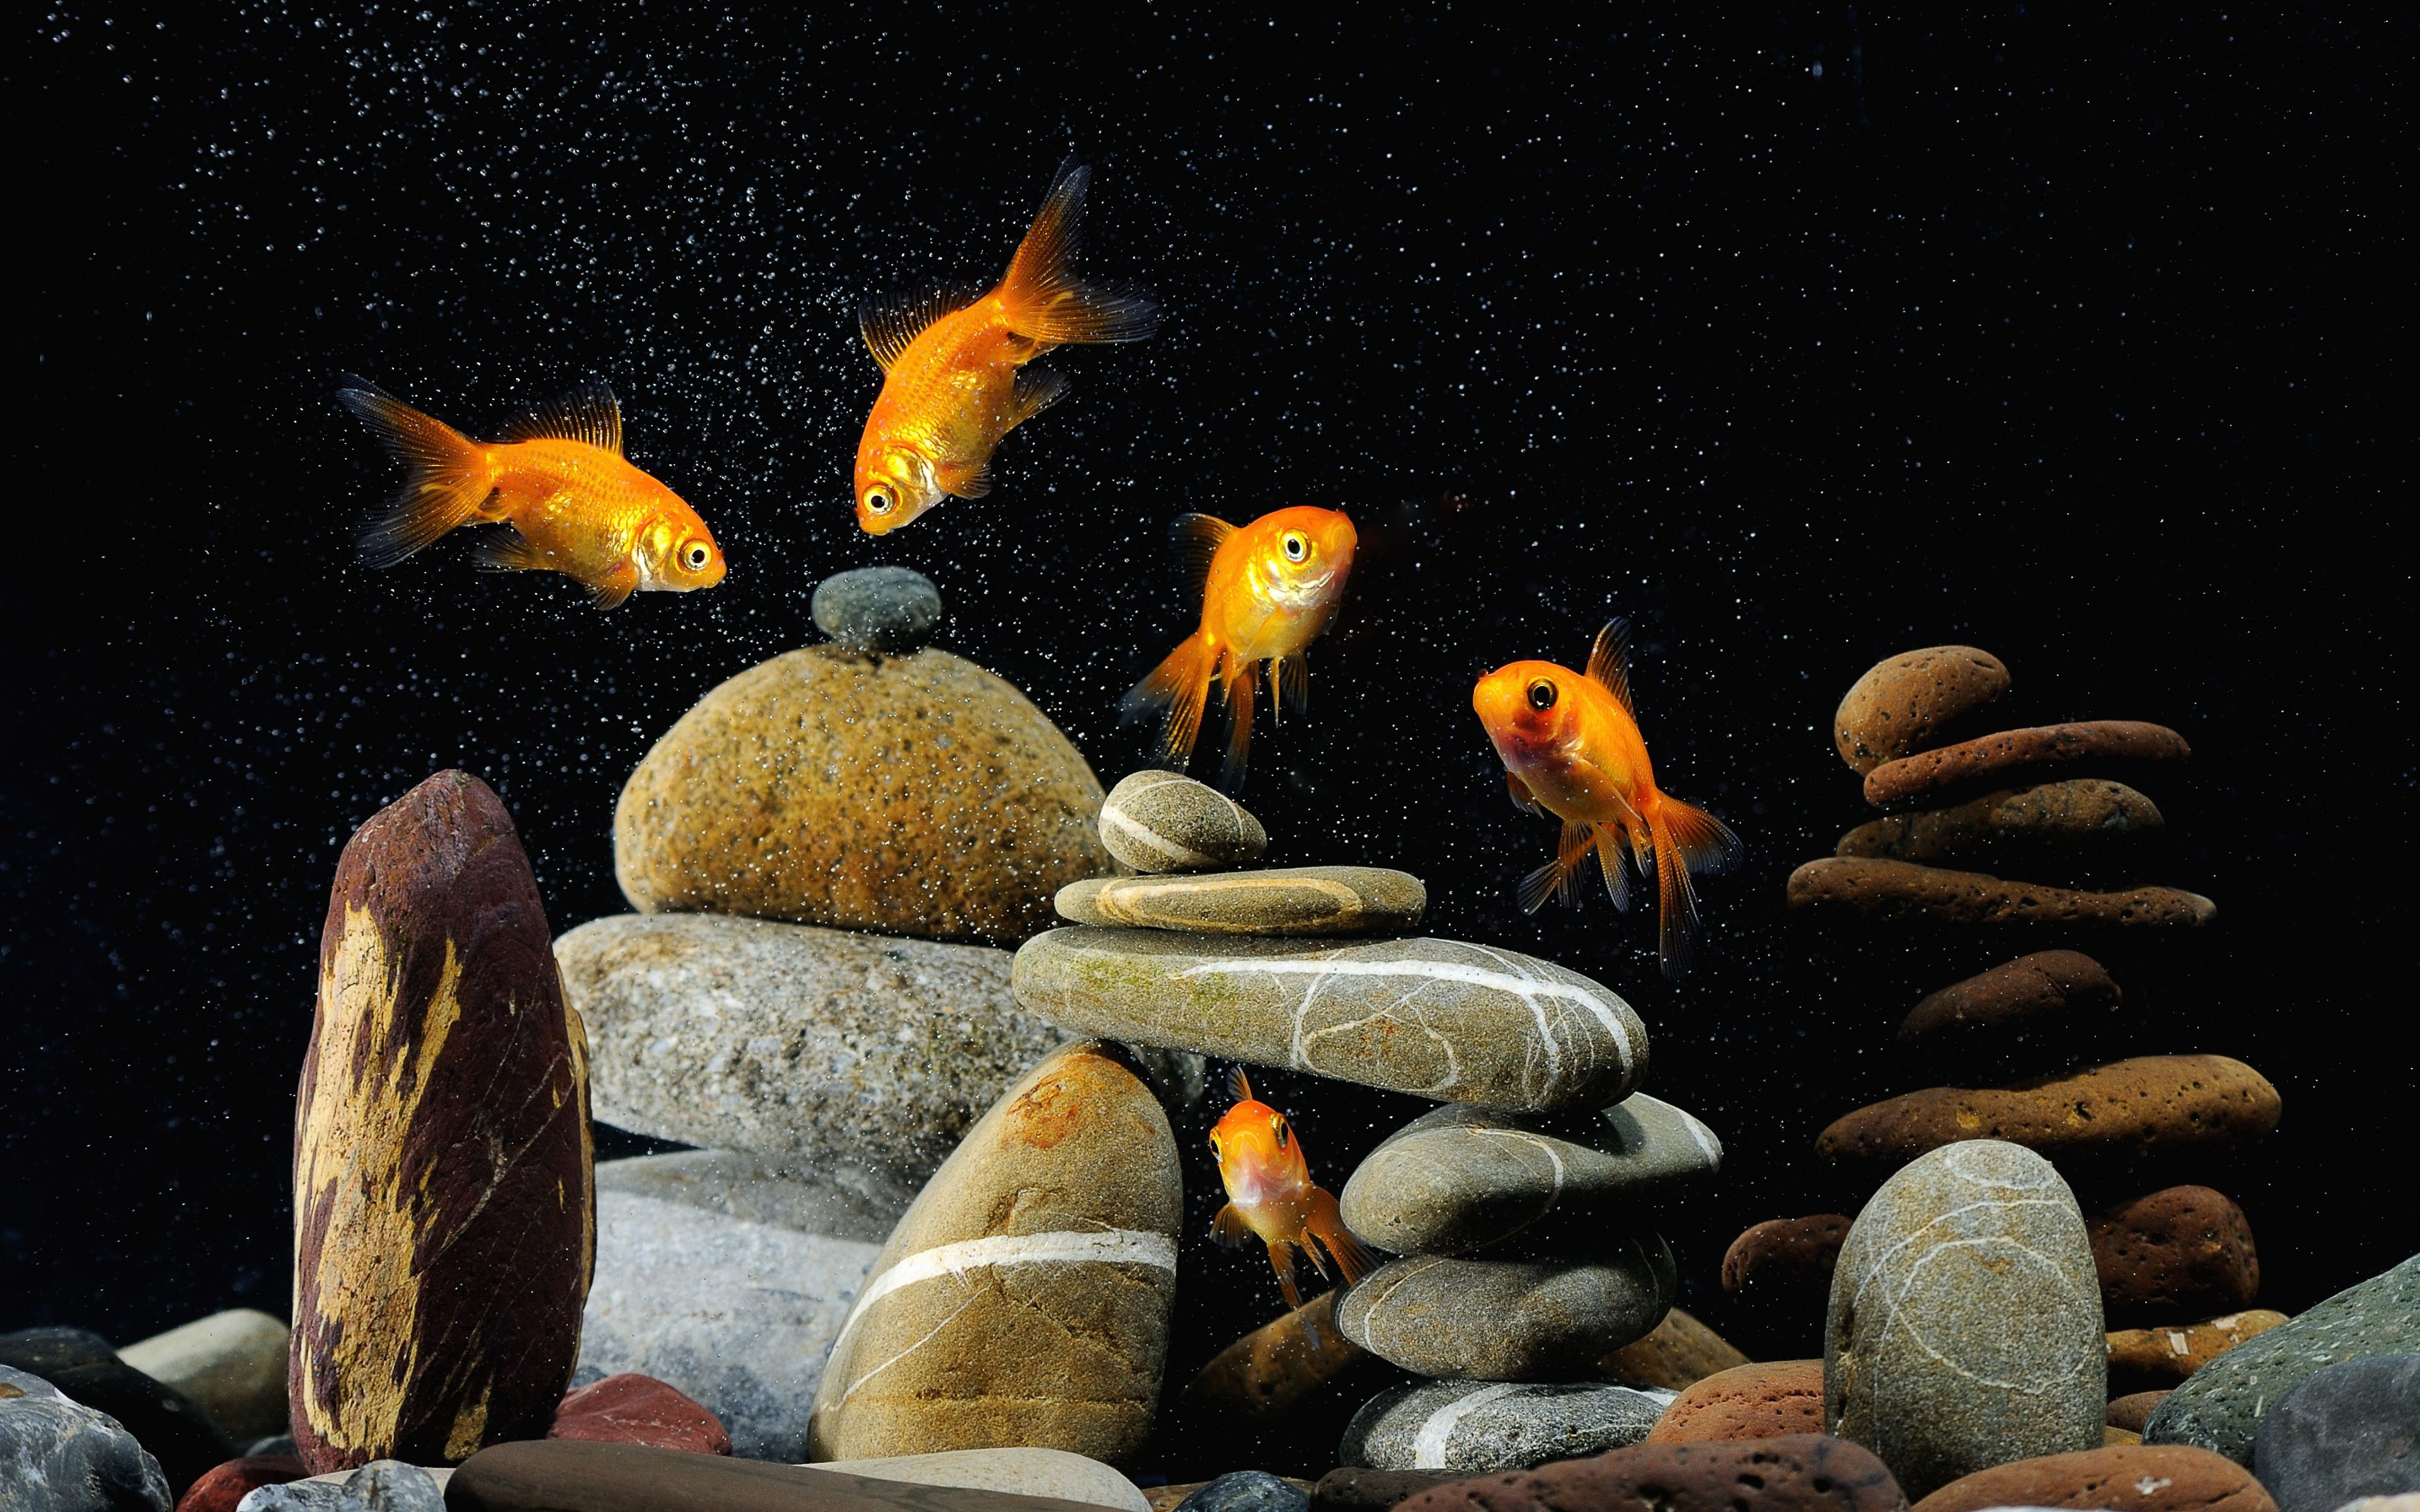 Hd live wallpaper fish aquarium dowload